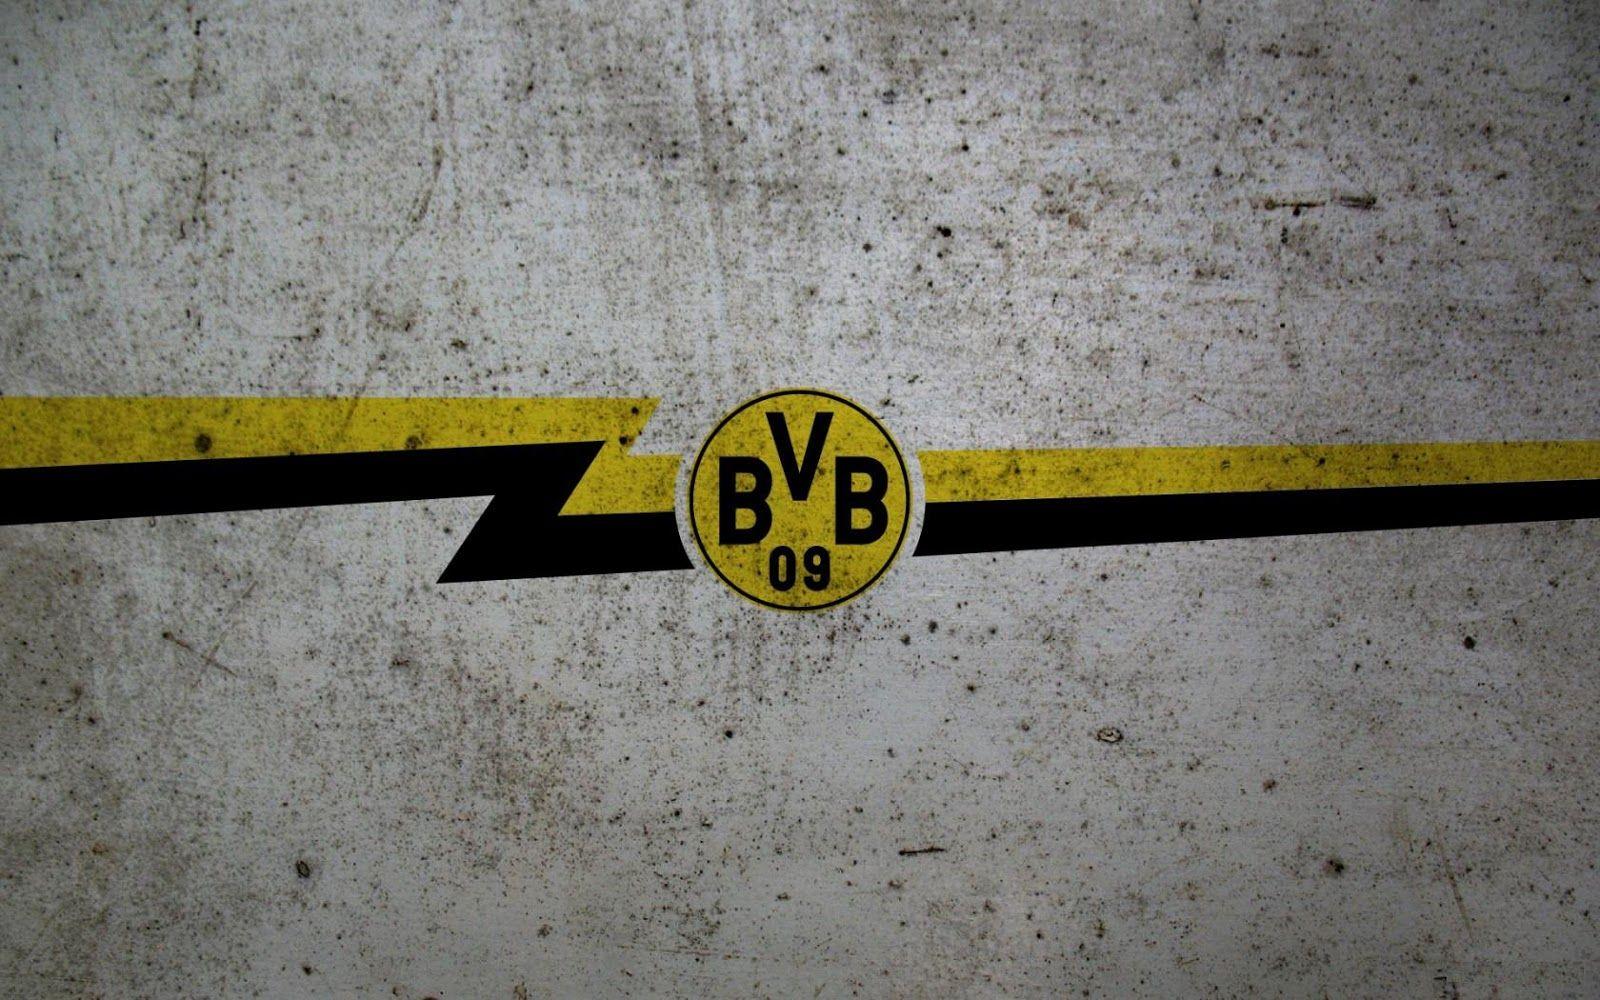 Borussia Dortmund HD Picture & Wallpaper. My HD Picture